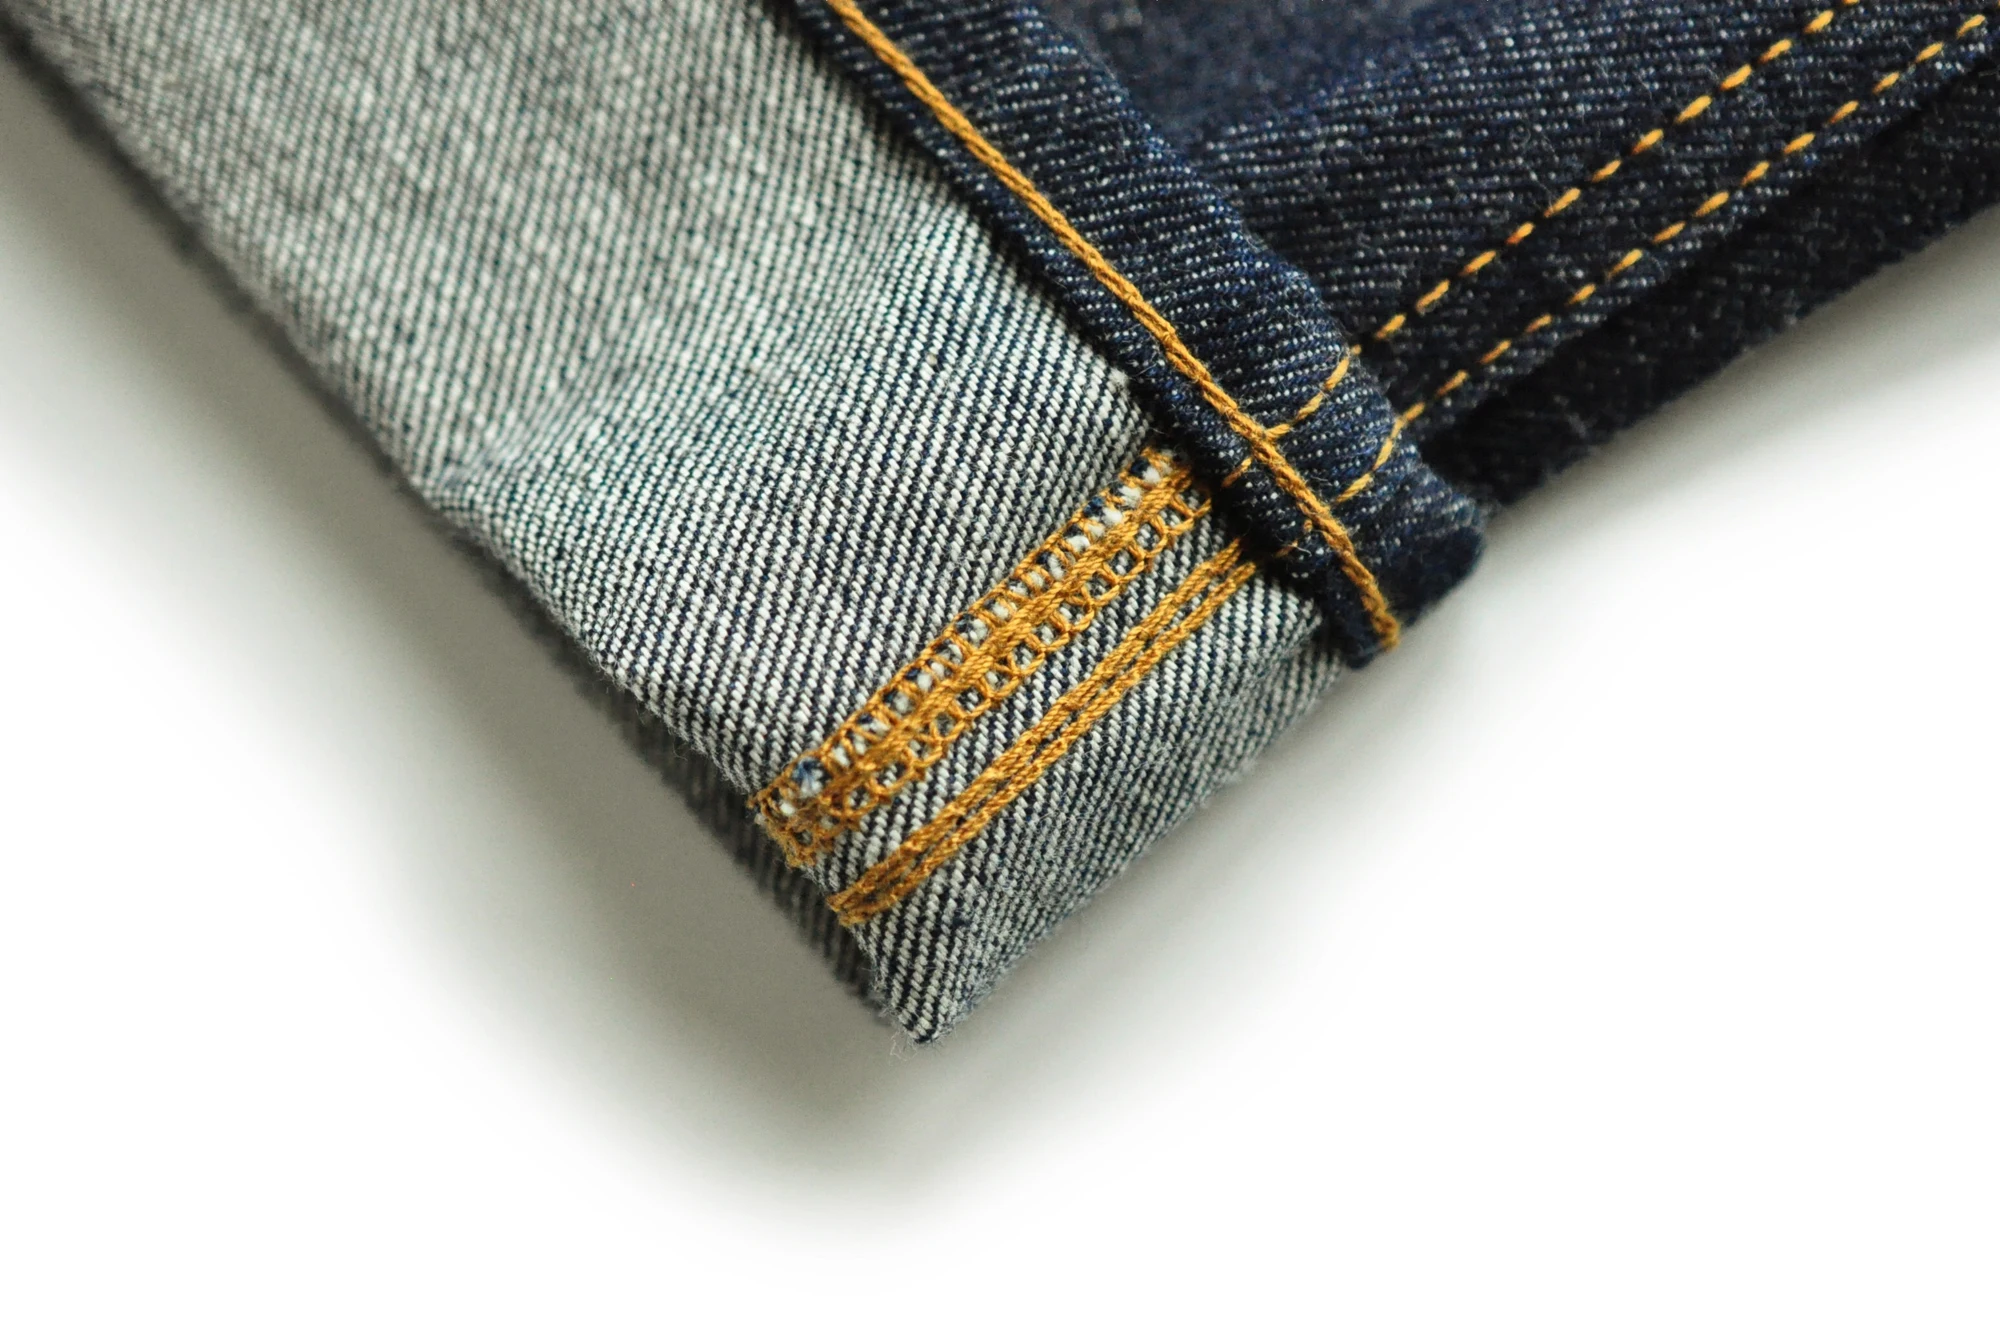 SauceZhan 317XX-RAW свободные джинсы Широкие брюки мужские s джинсы Брендовые сырые джинсовые джинсы Selvedge джинсы Unsanforized деним джинсы мужские